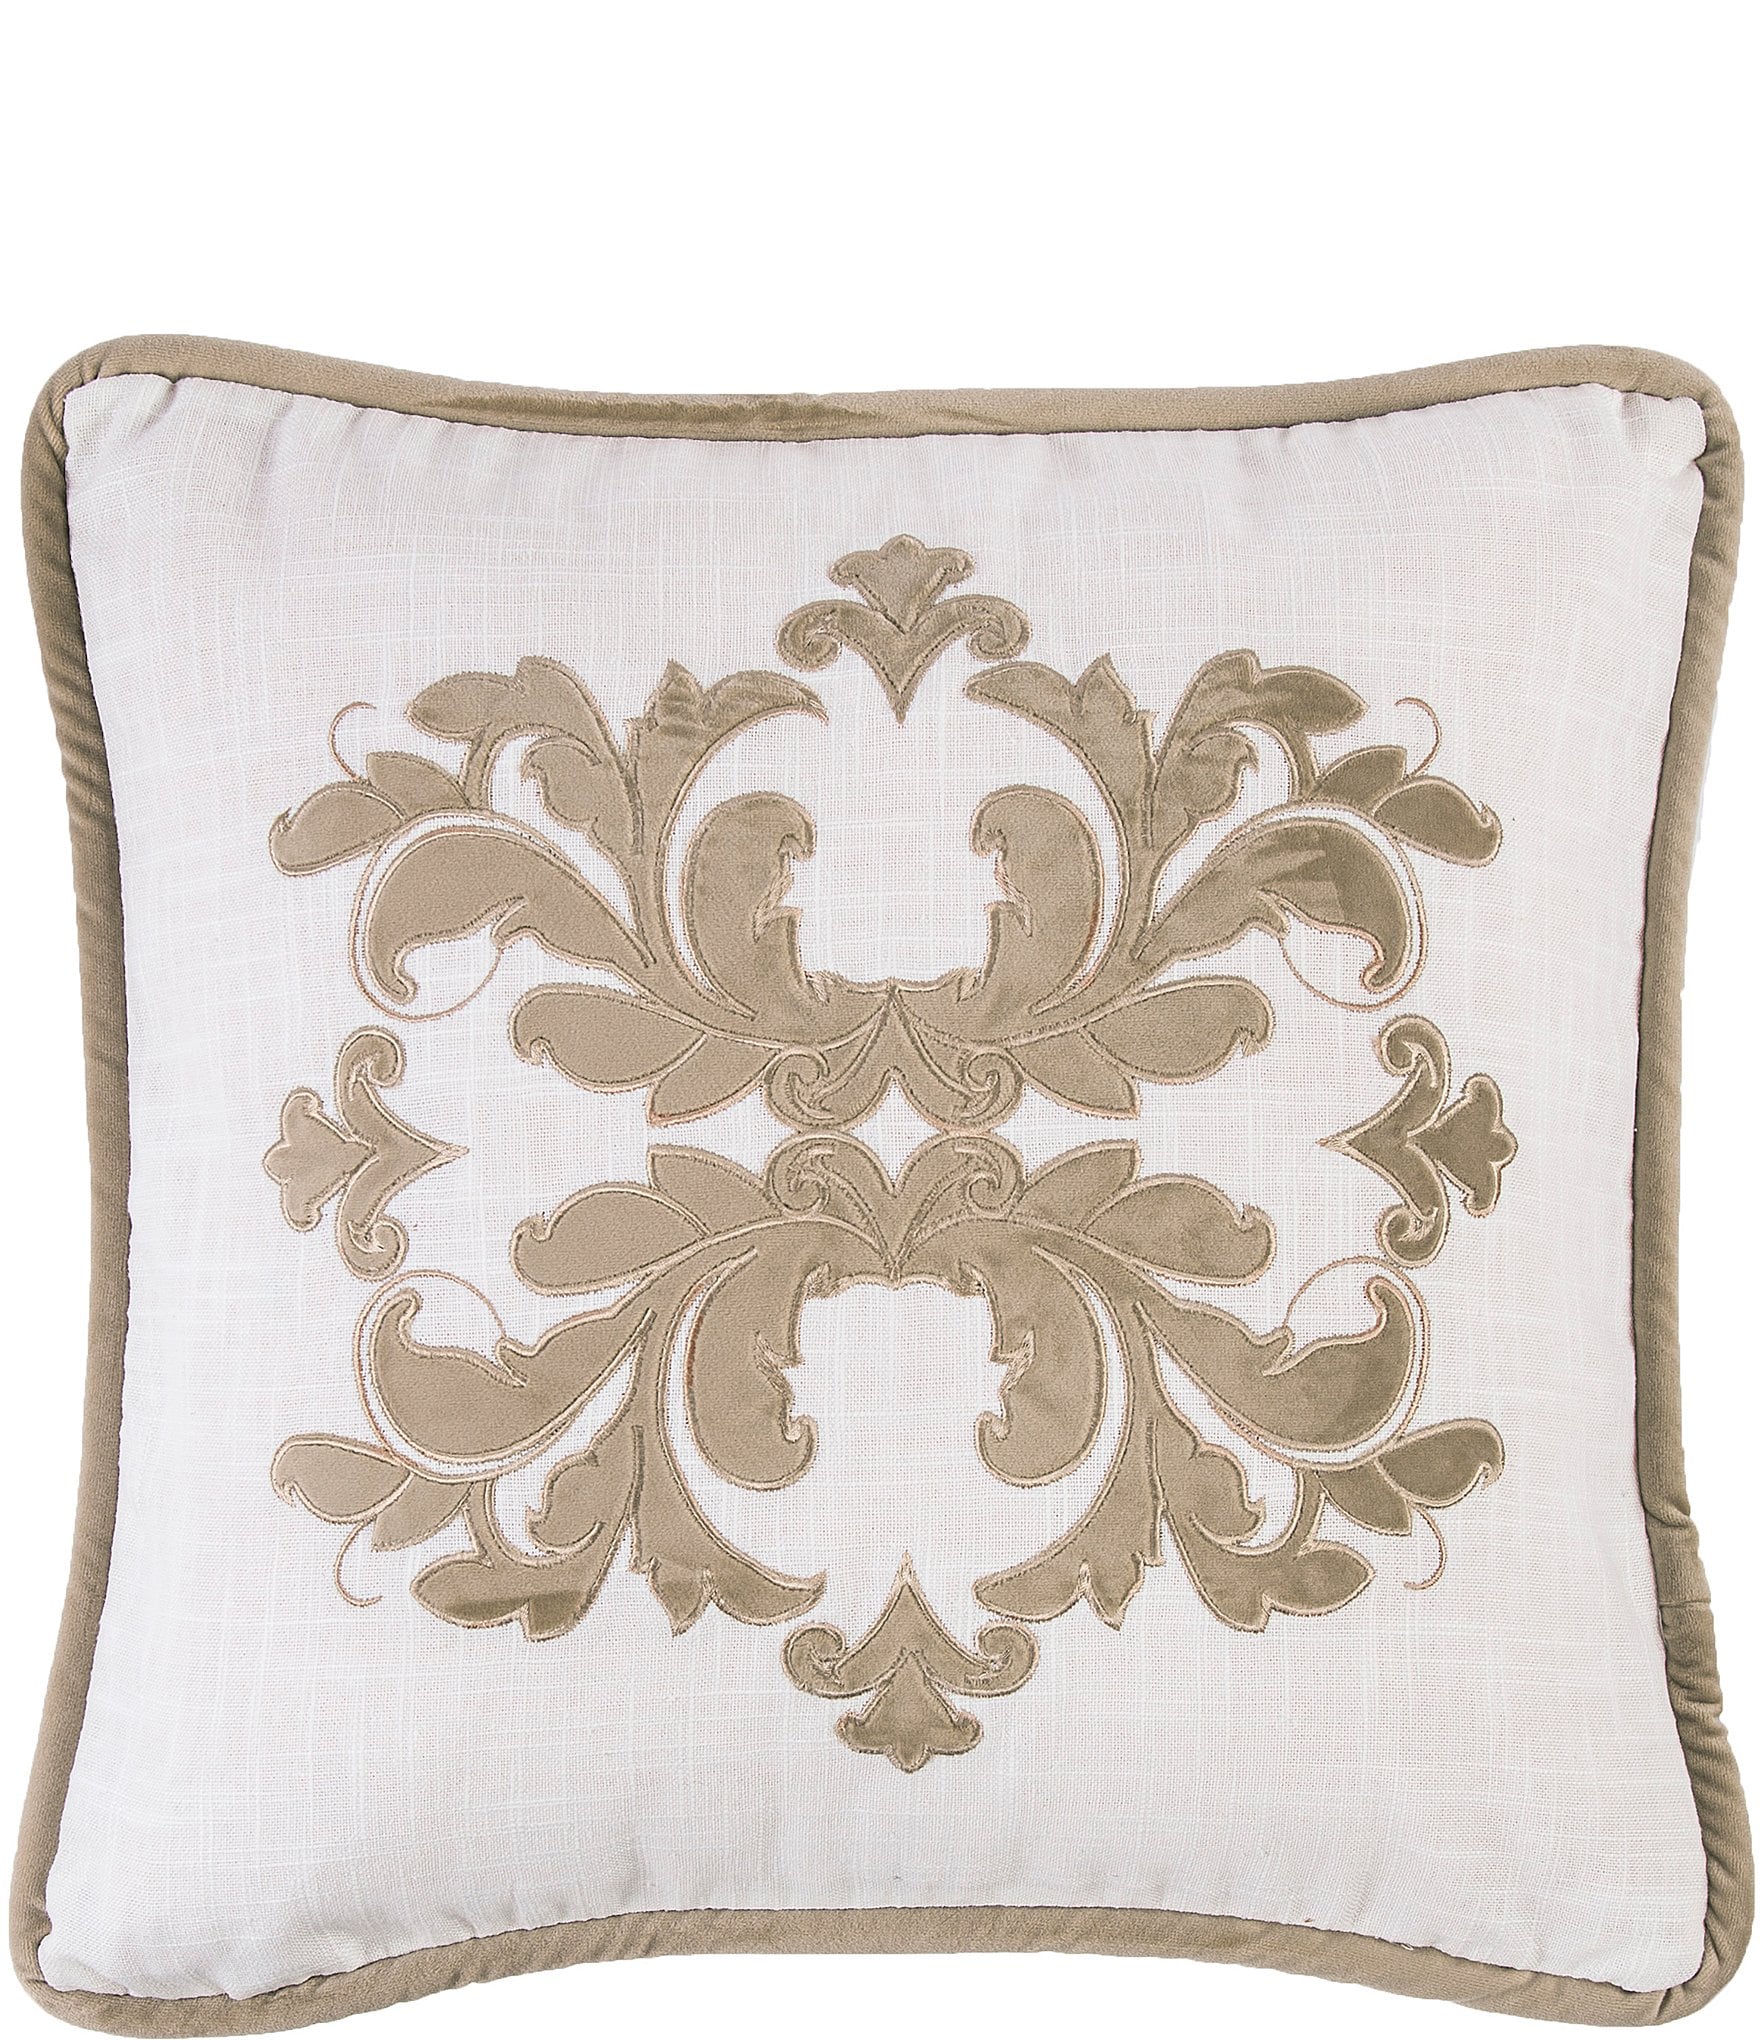 Decorative & Throw Pillows | Dillard's